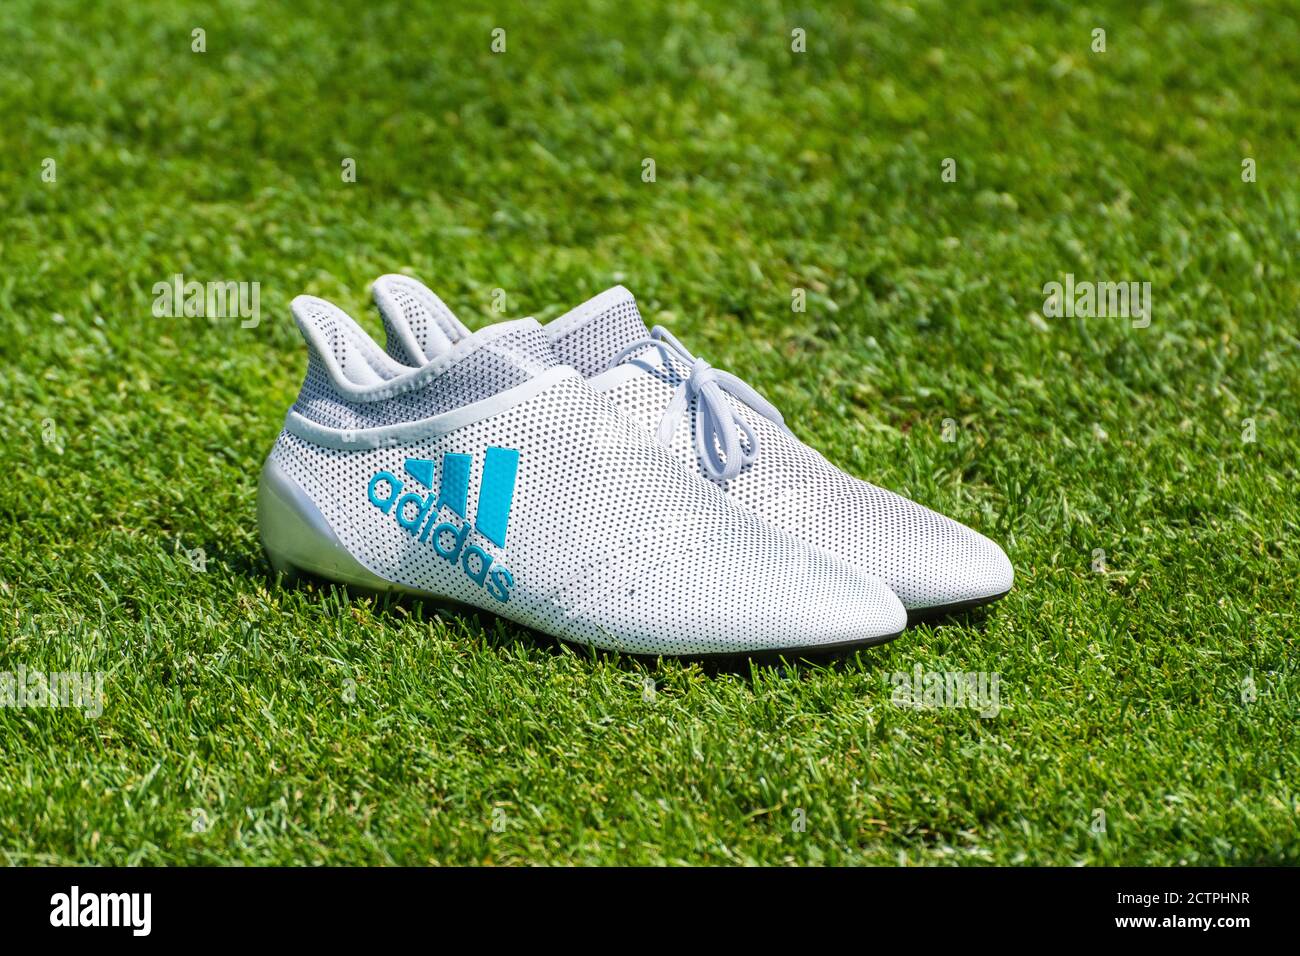 Adidas soccer shoe immagini e fotografie stock ad alta risoluzione - Alamy